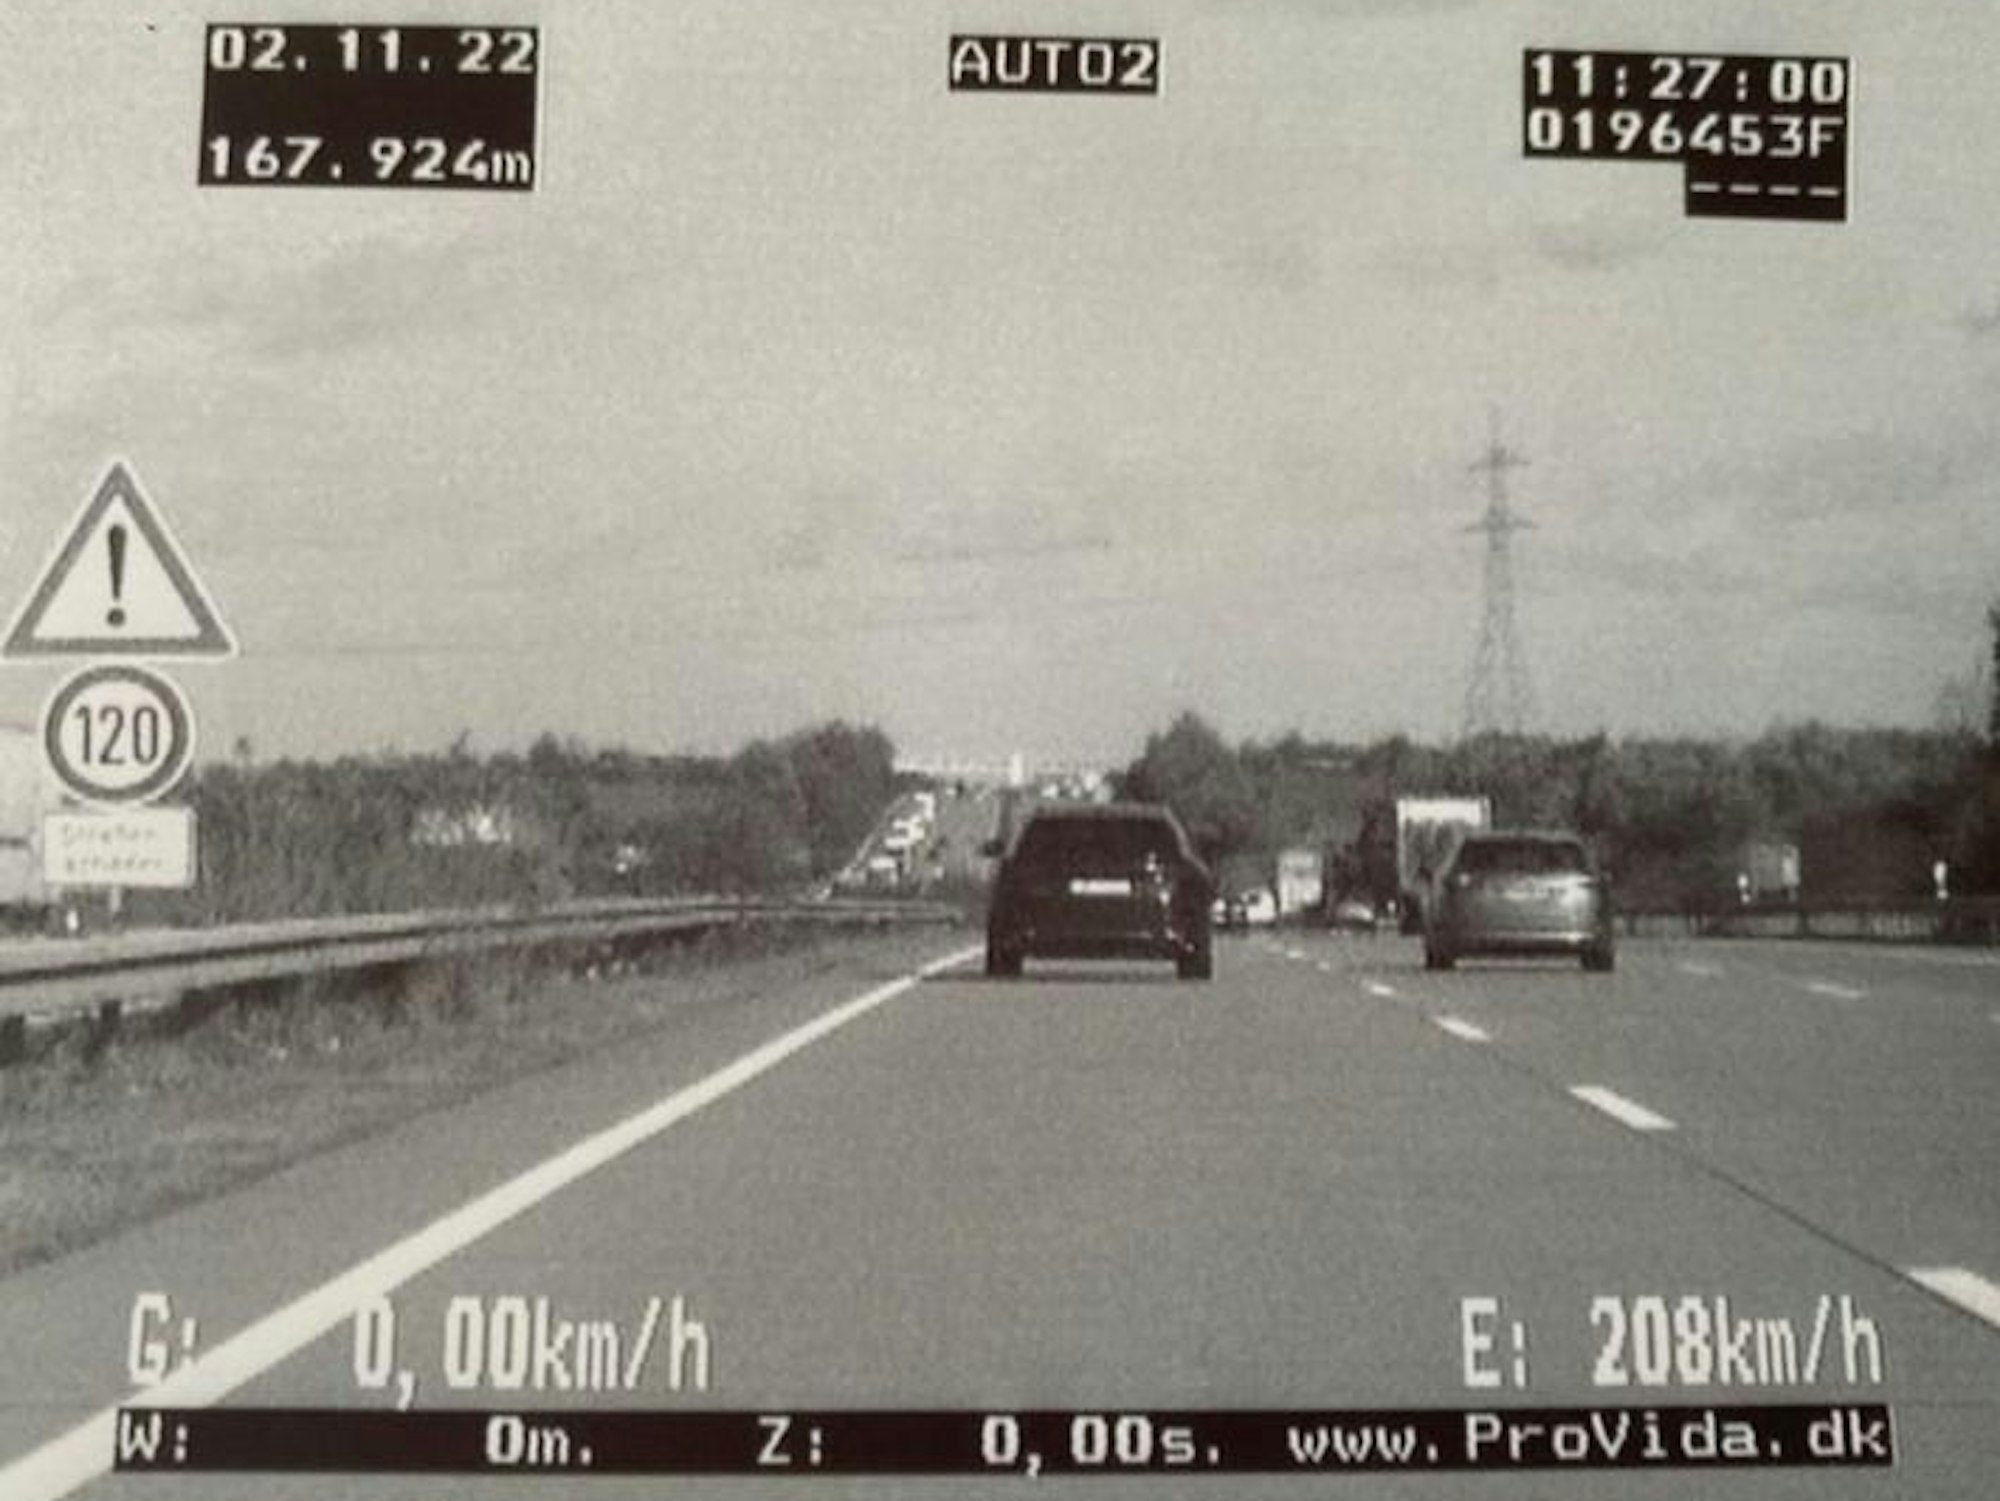 Blitzer-Foto eines Audi, der 208 km/h auf der Autobahn fährt.